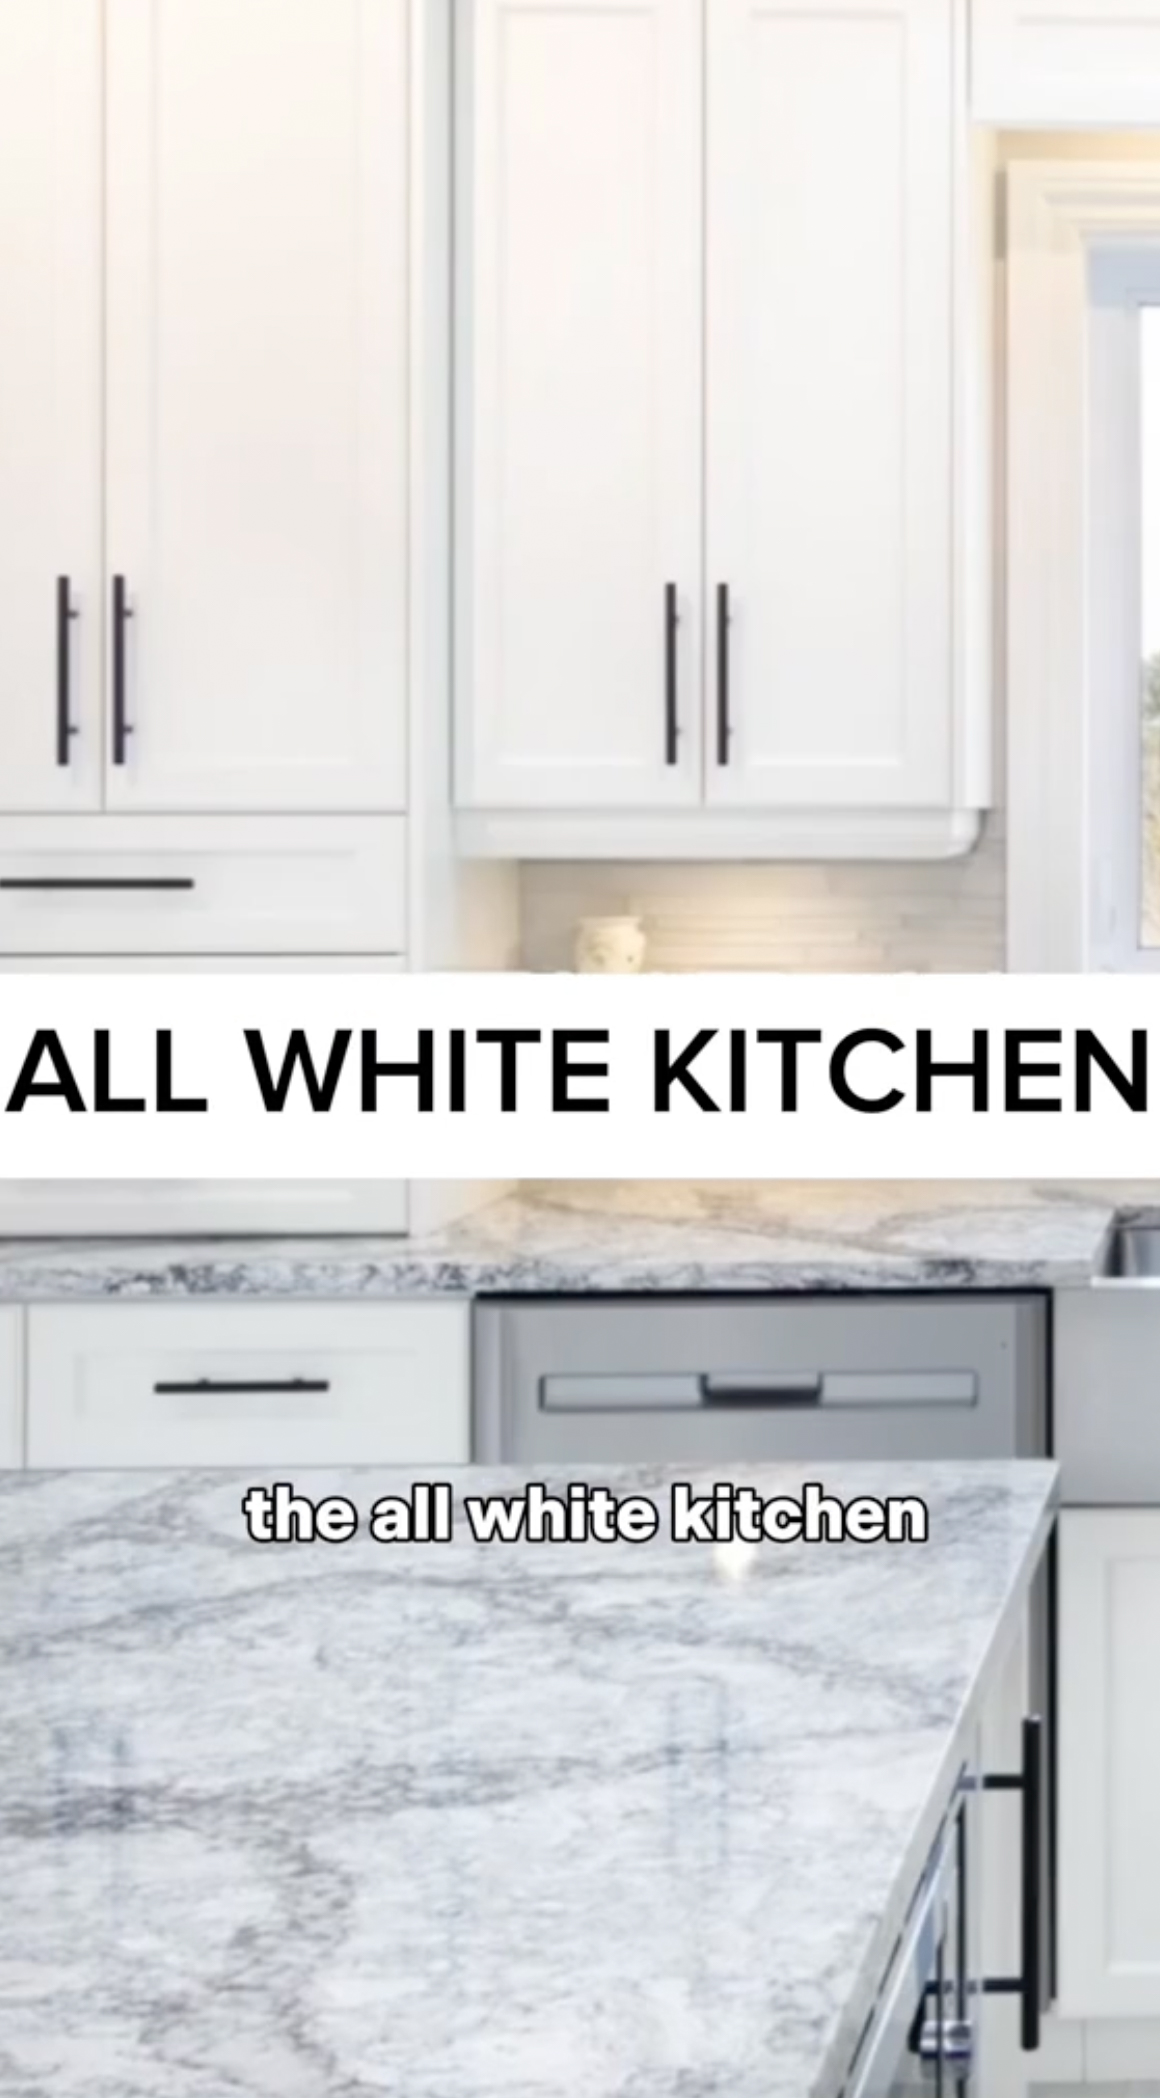 Die Innenarchitektin sagte, sie glaube, dass Küchen komplett in Weiß gehalten seien "langweilig"